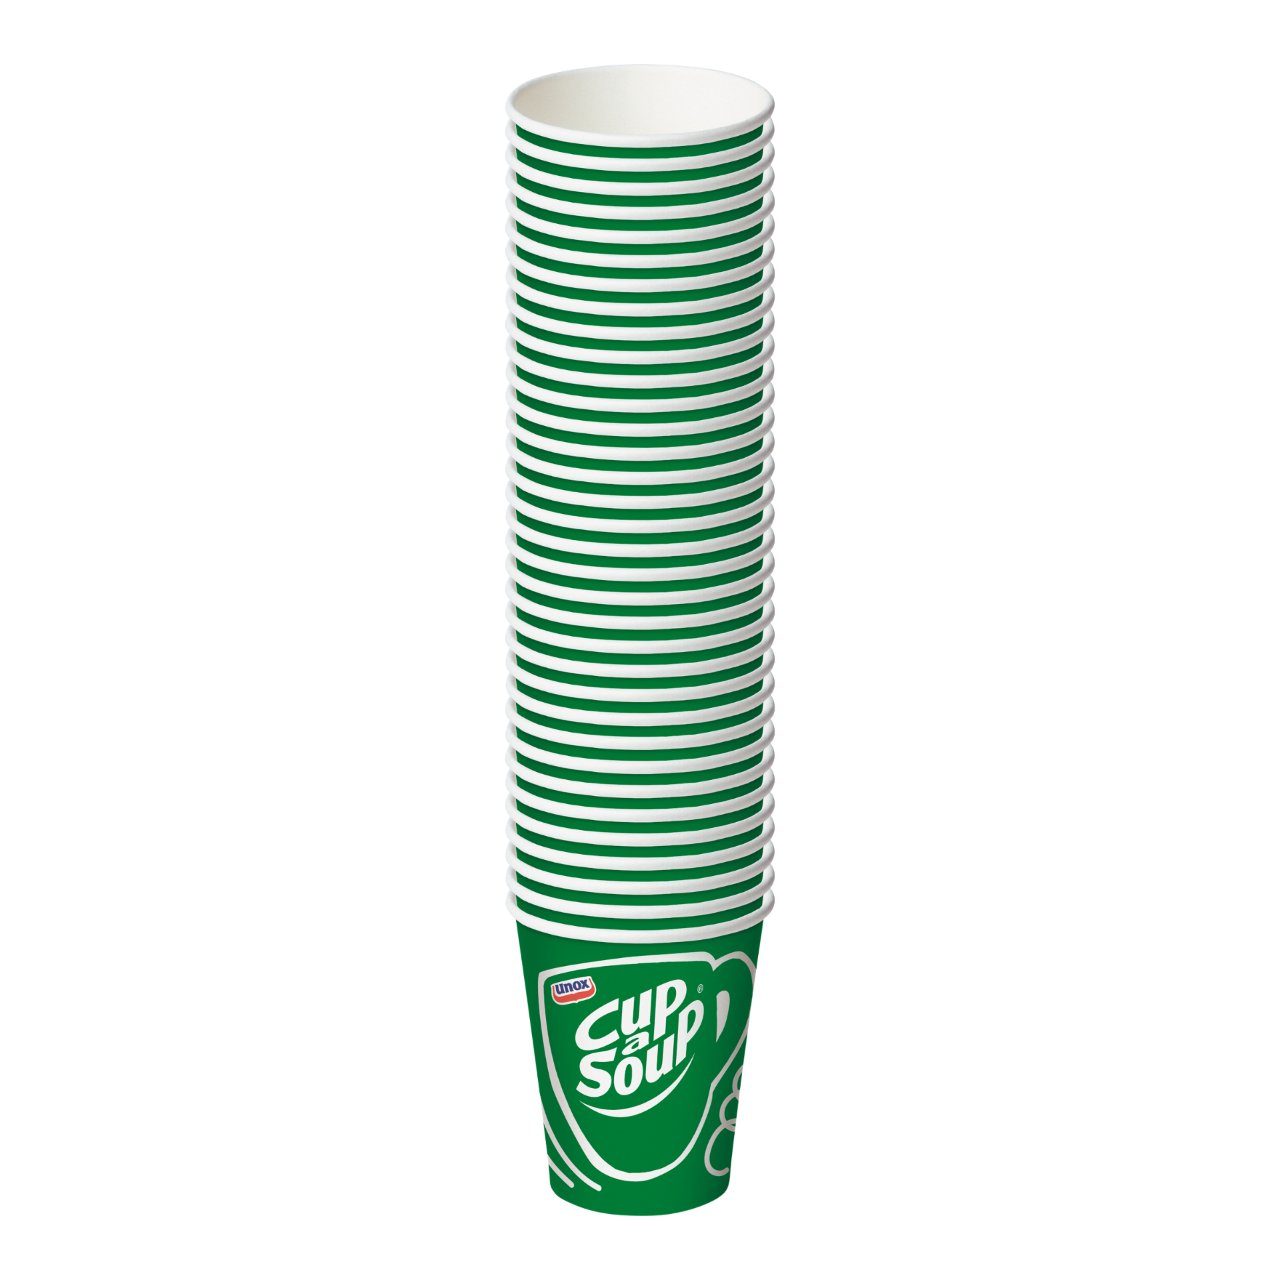 Unox Cup A Soup kartonnenbeker (50x185 ml) - van Unox - Nu voor maar €7.89 bij Workwear 2 Day